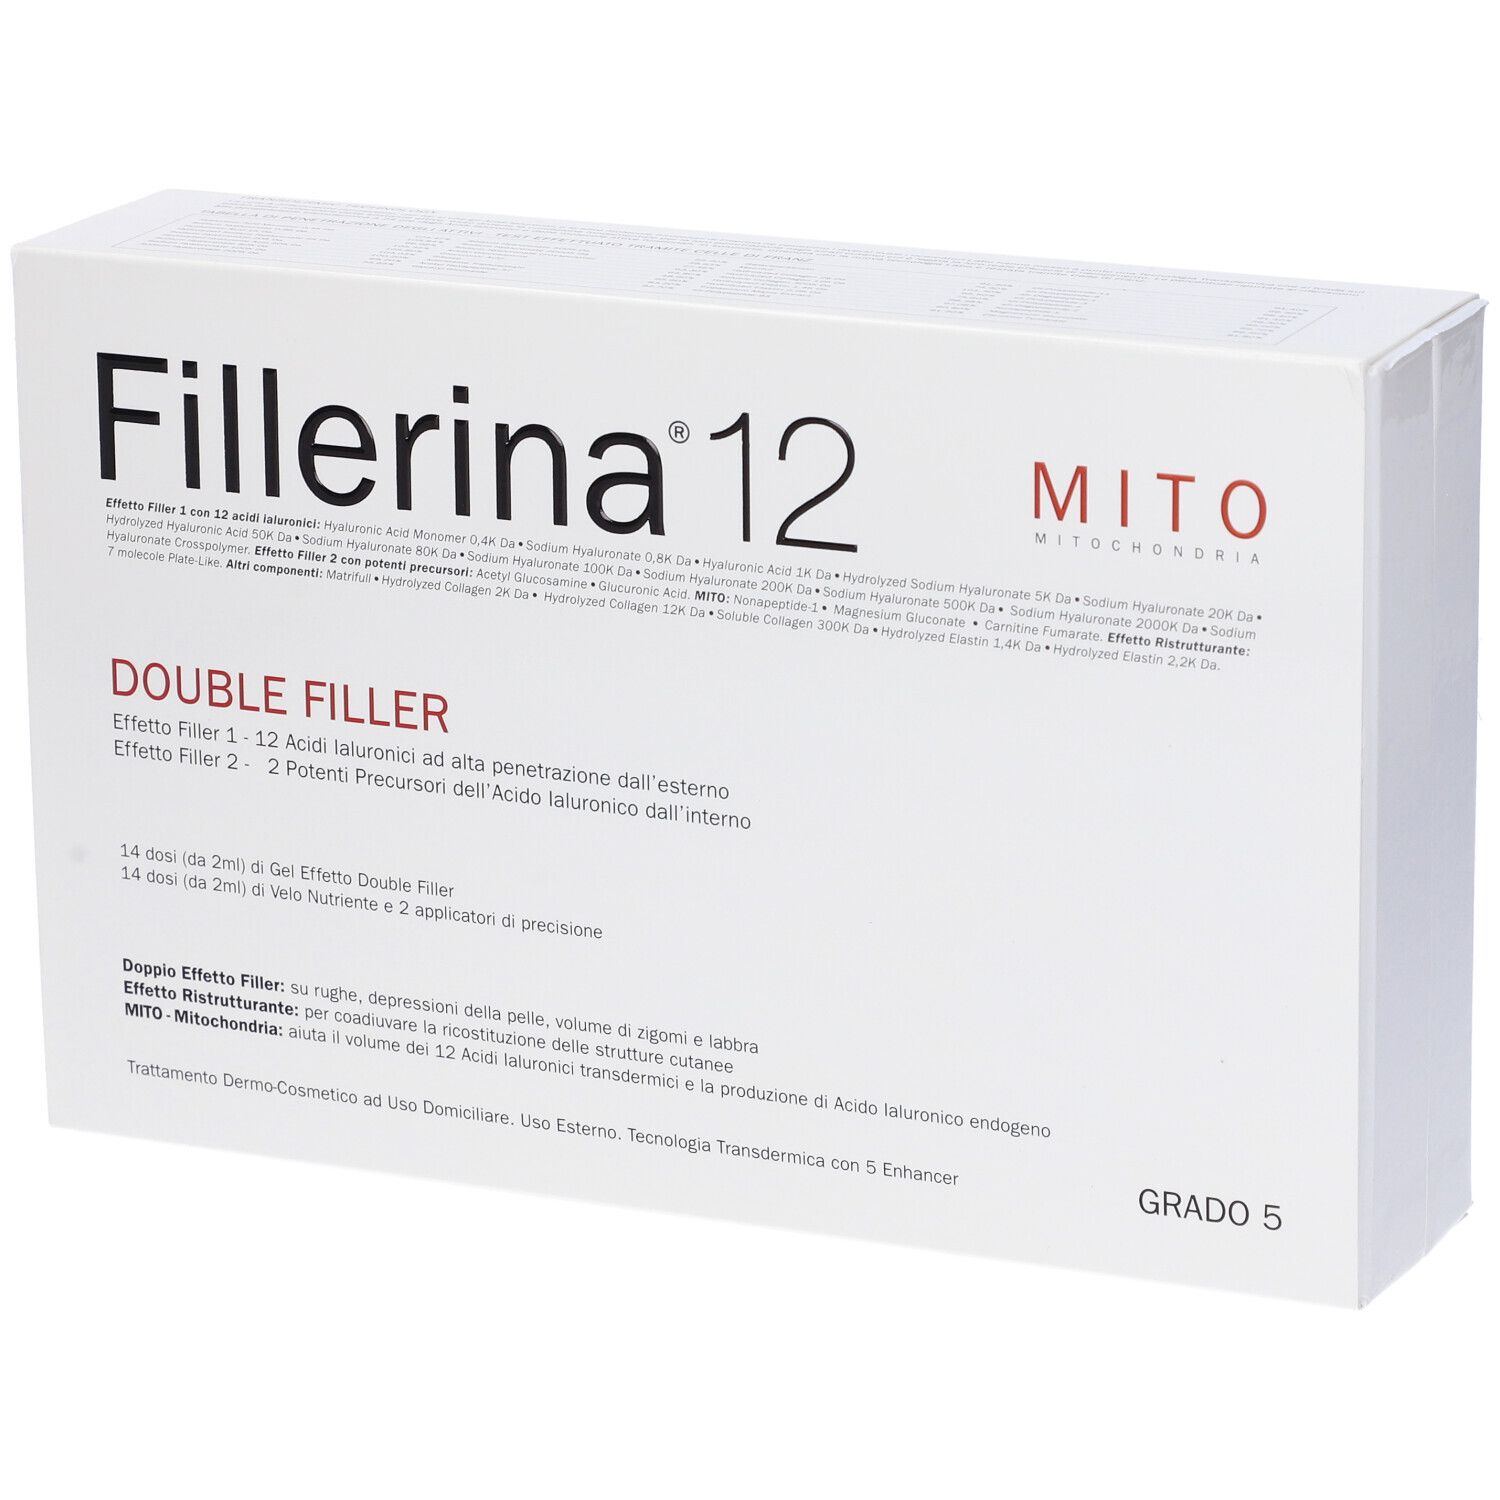 Fillerina 12 Double Filler Mito Base Grado 5